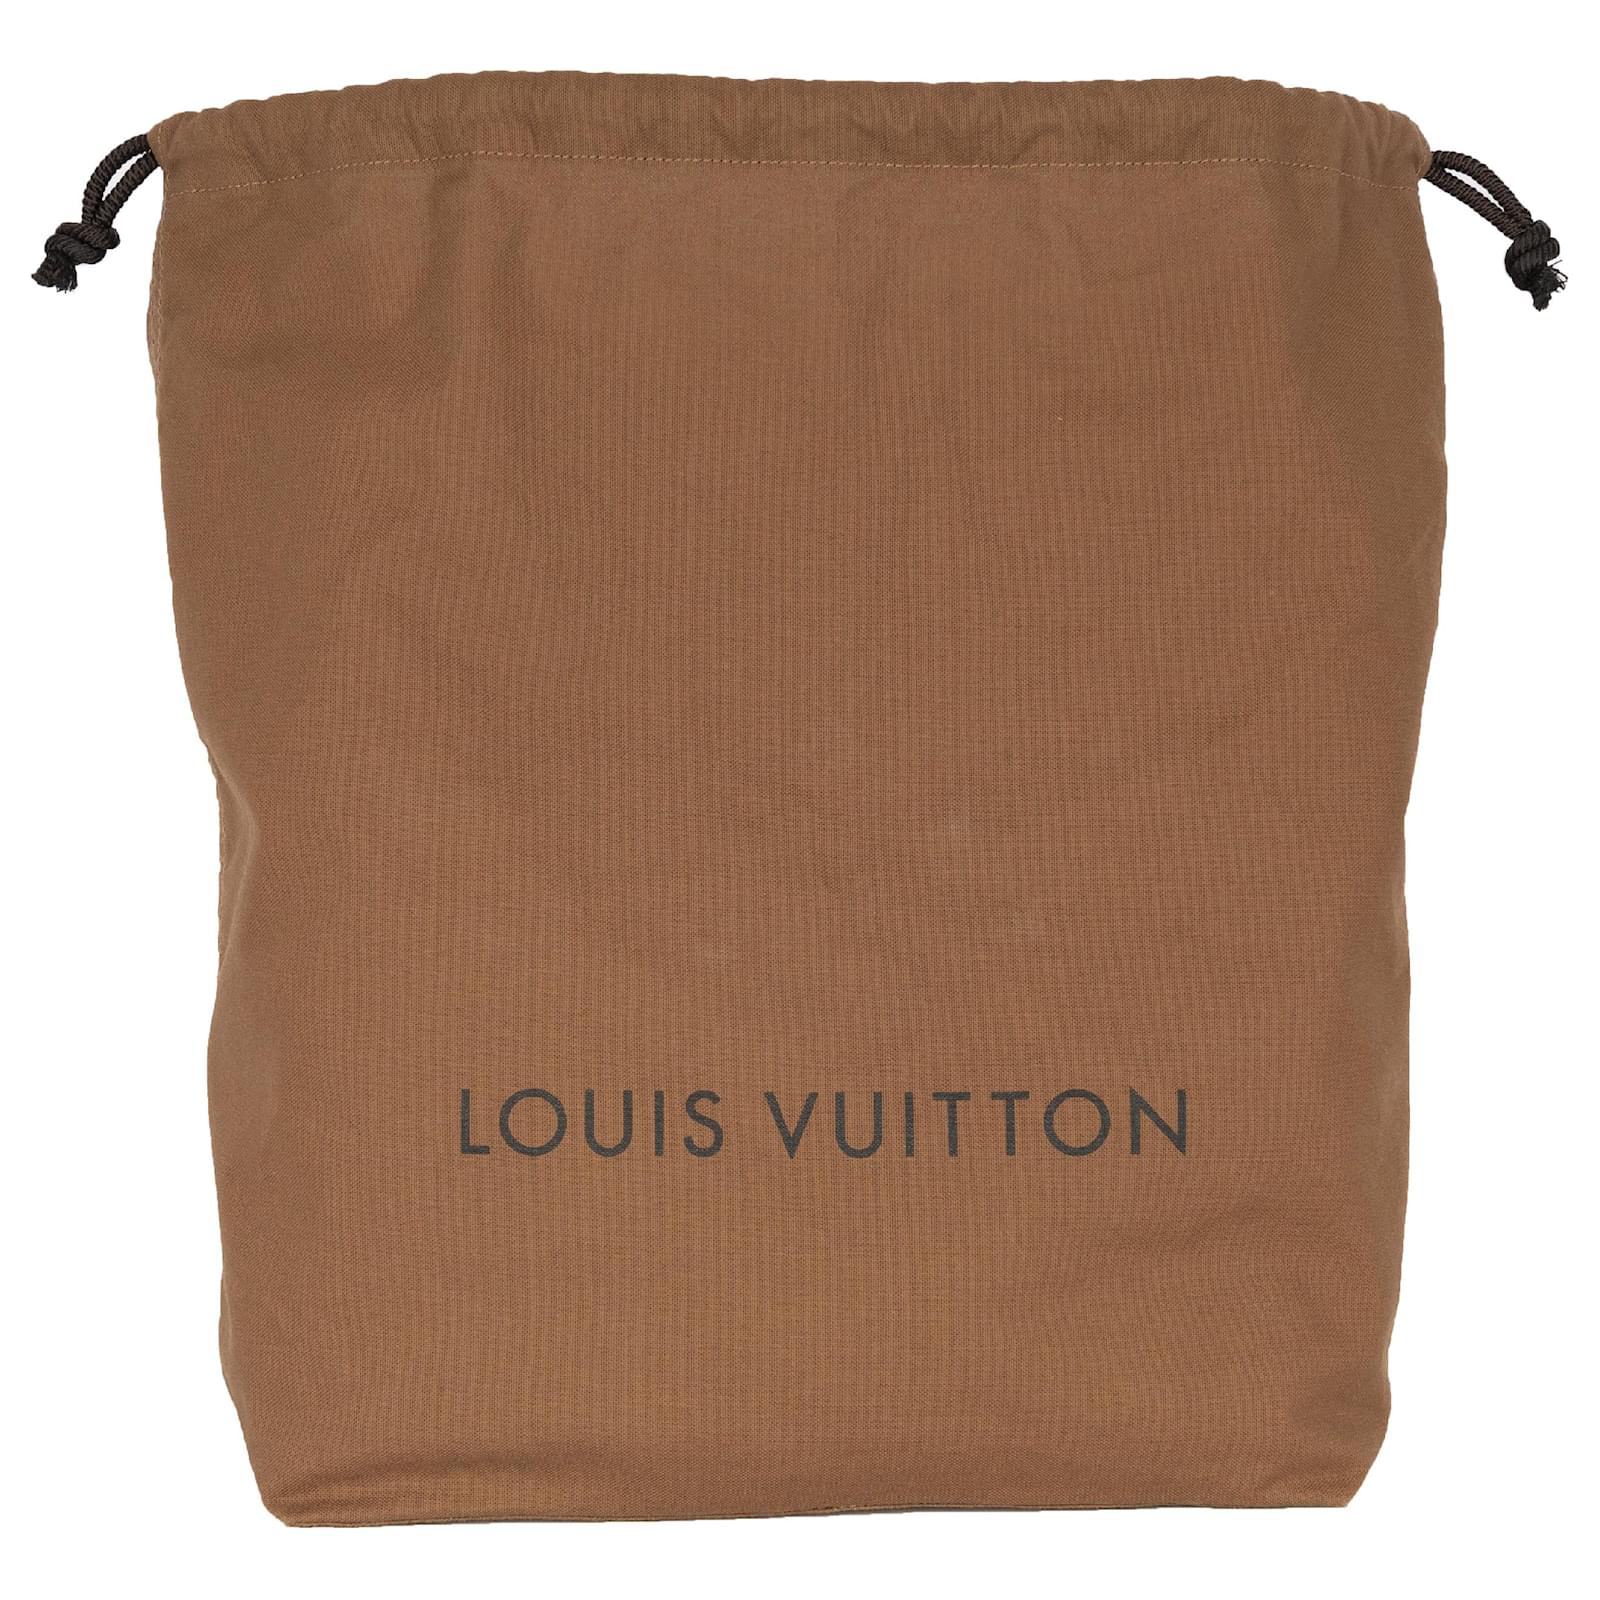 Louis Vuitton, Bags, Louis Vuitton Large Dust Bag For Bags